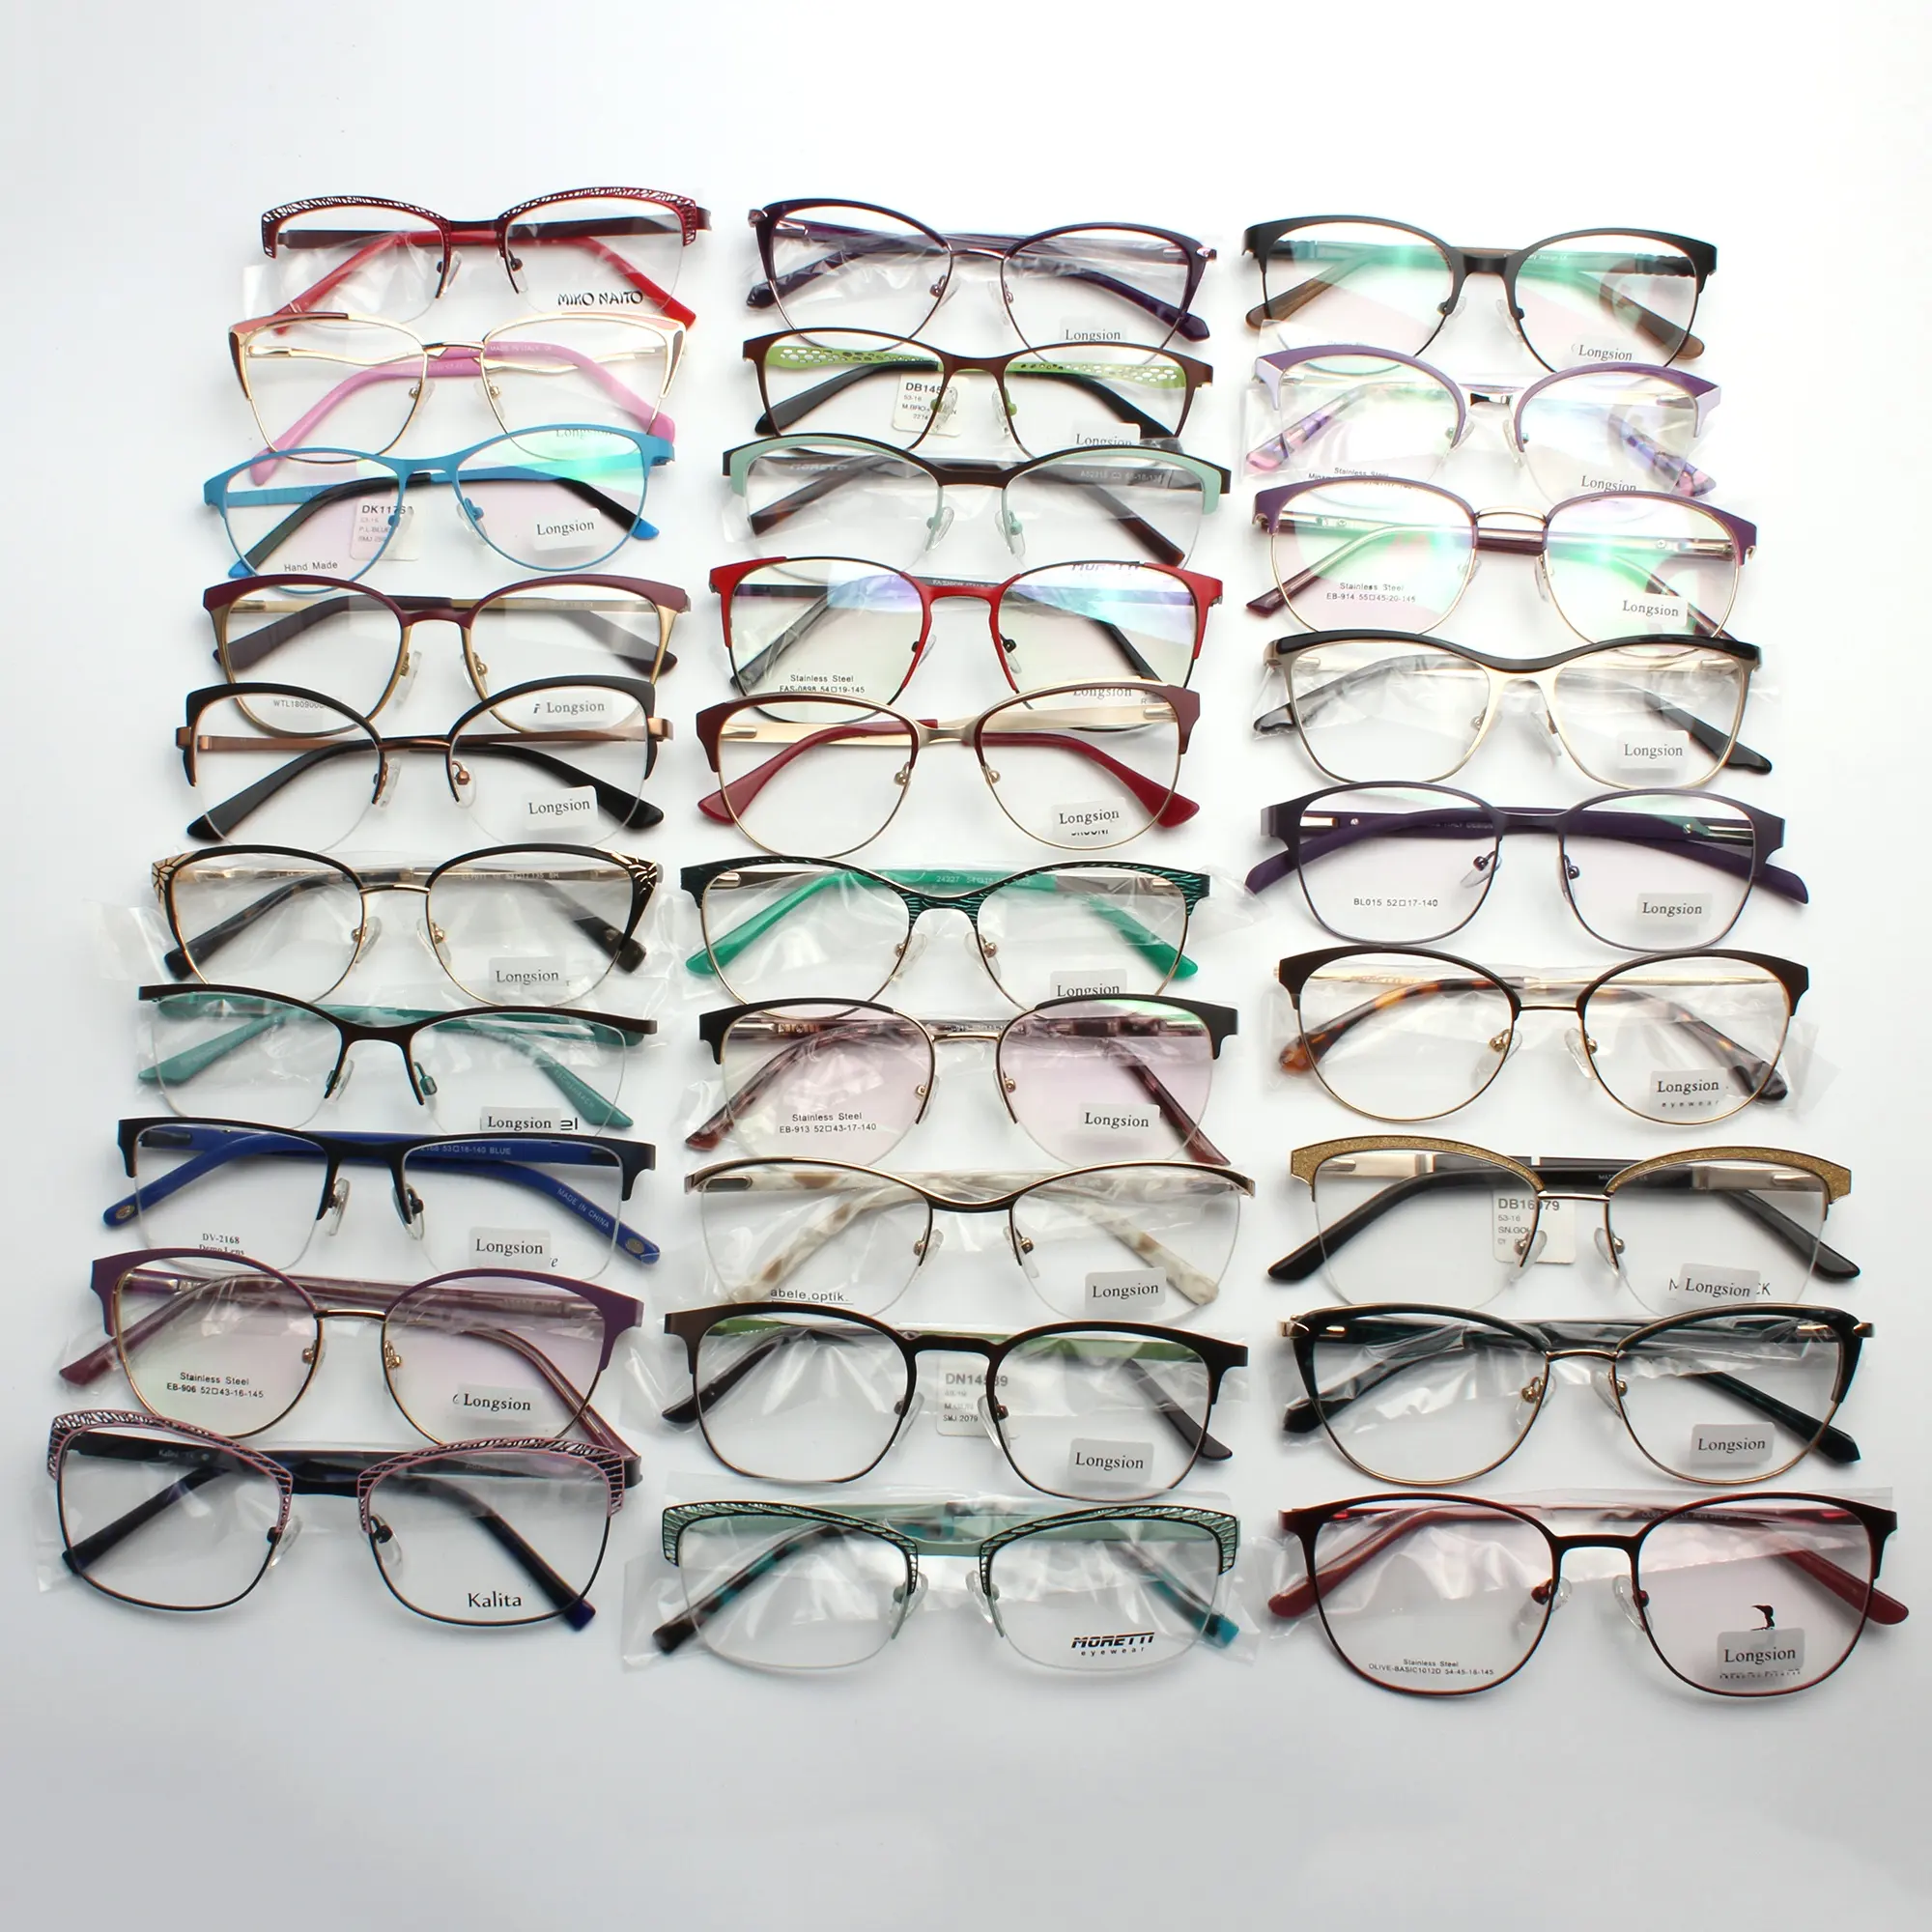 Prezzo economico montatura per occhiali assortiti montatura per occhiali in metallo stock ready occhiali ottici occhiali firmati montature per occhiali per negozio